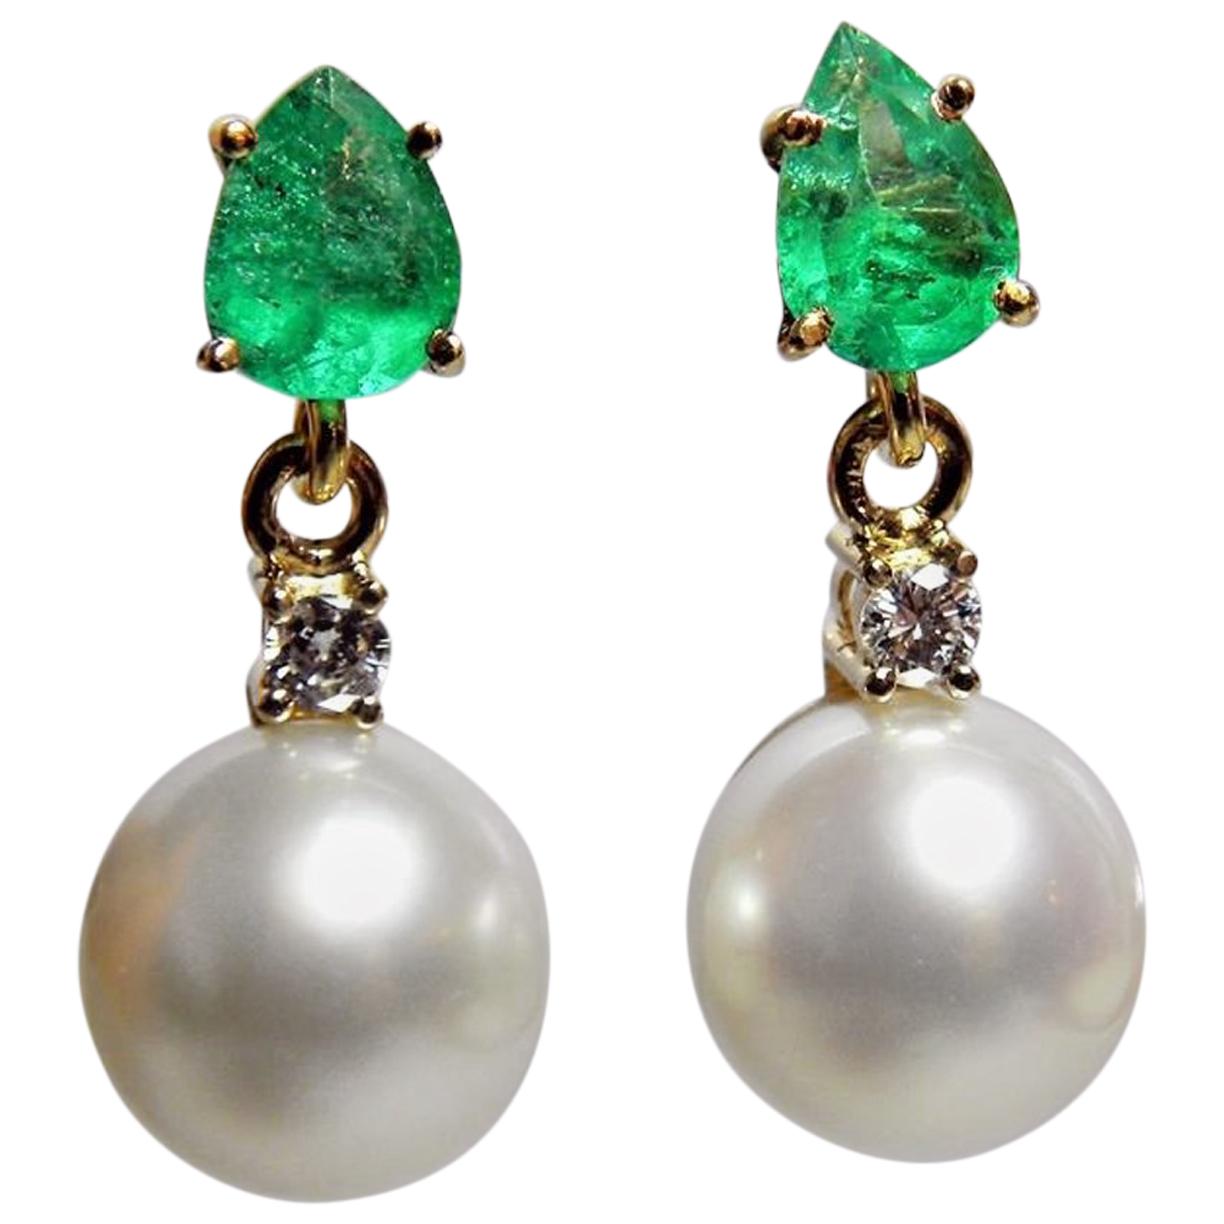 Pendants d'oreilles en or 18 carats avec diamants, émeraudes naturelles et perles blanches des mers du Sud